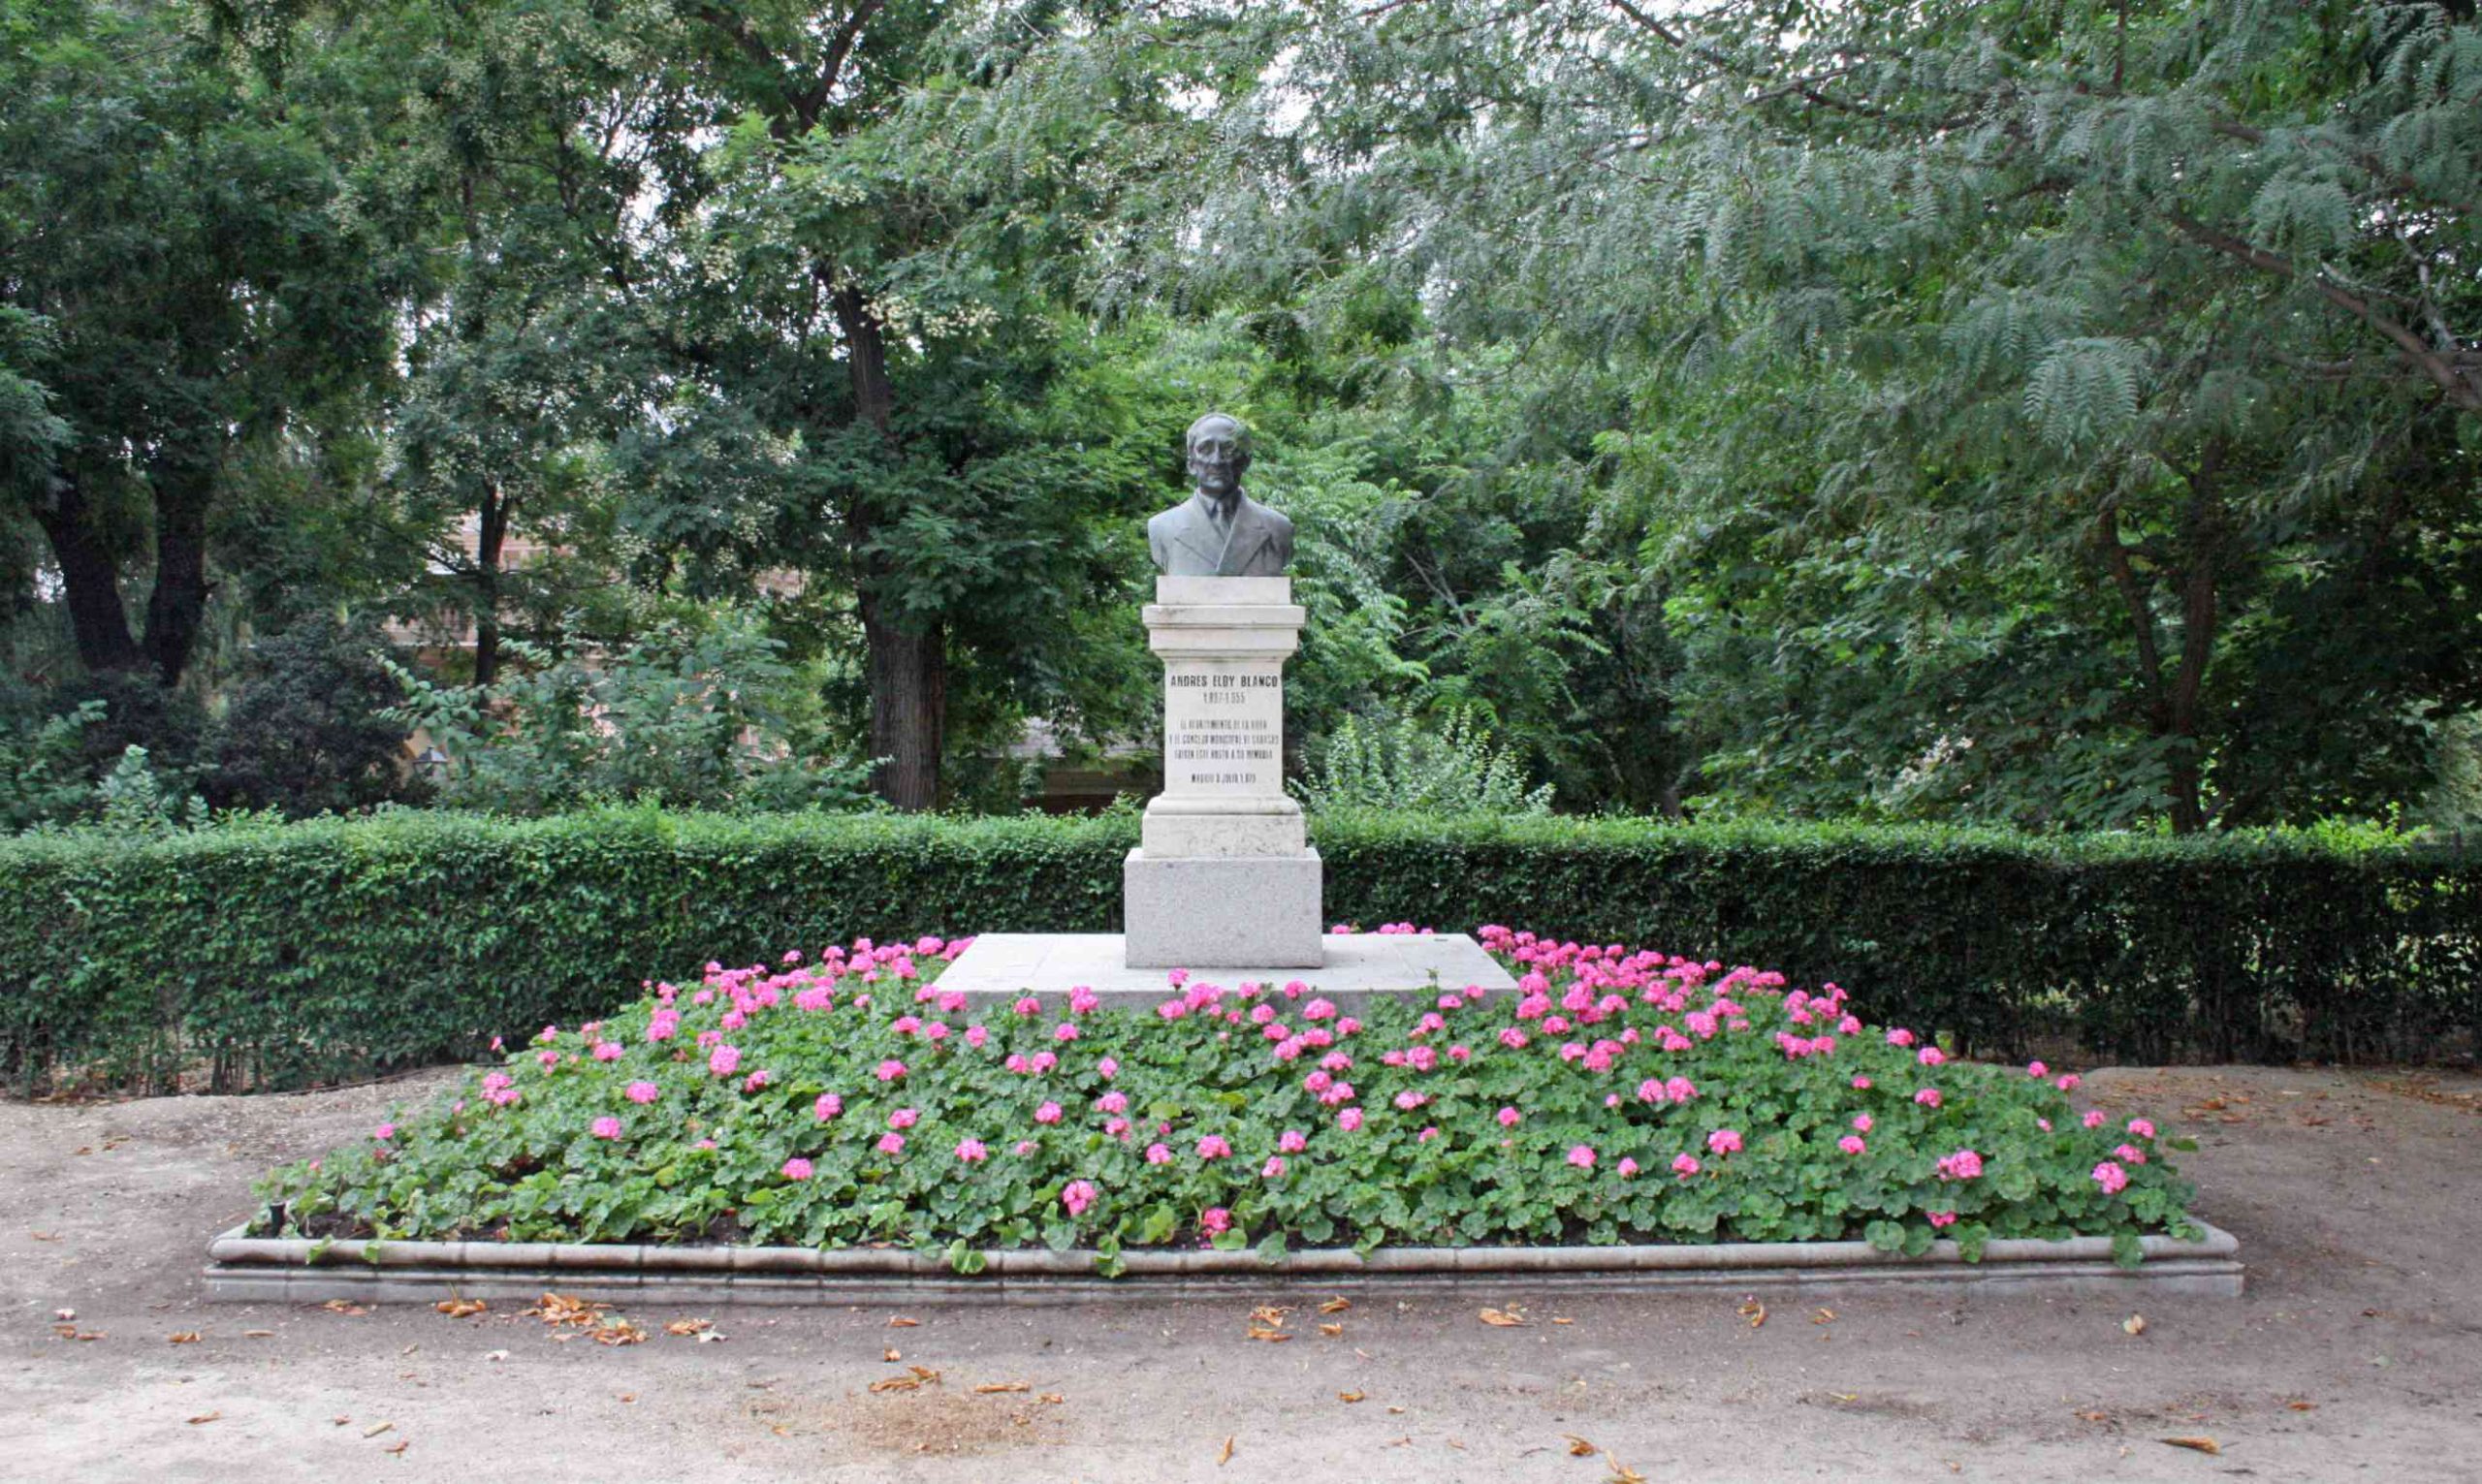 Monumento a Andrés Eloy Blanco en el Parque del Retiro, Madrid.